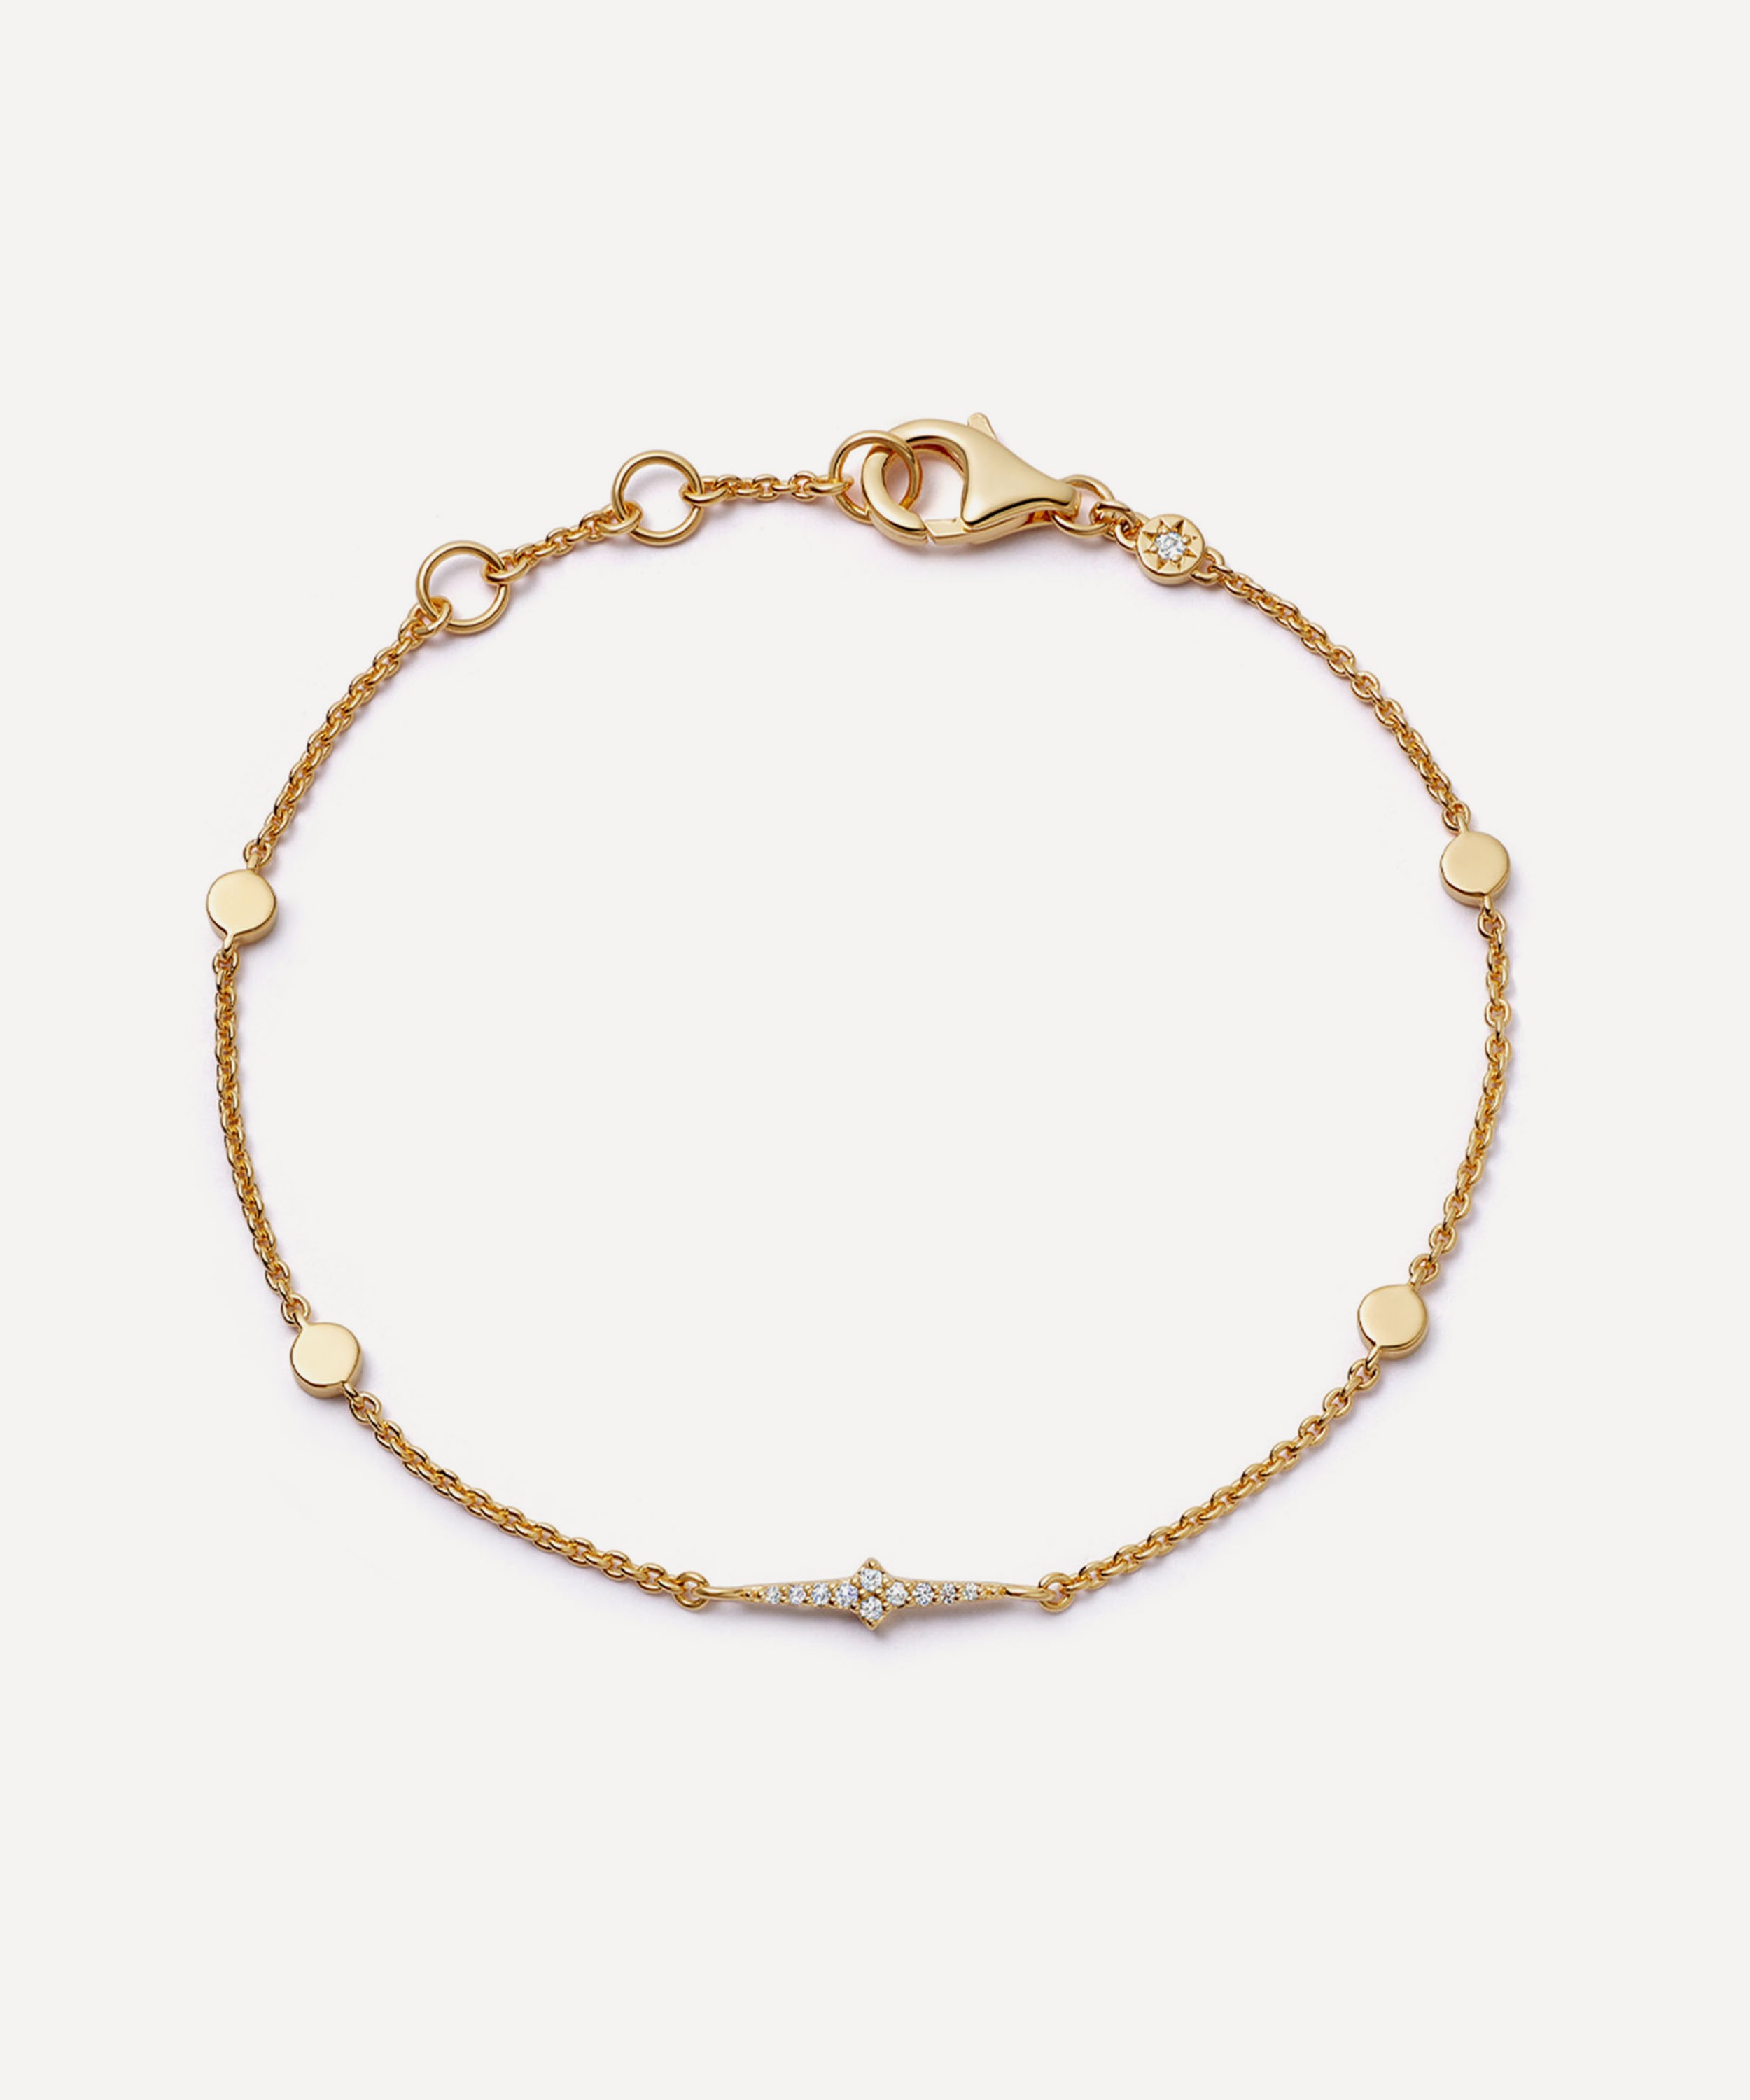 Astley Clarke  Fine & Demi-Fine Jewellery